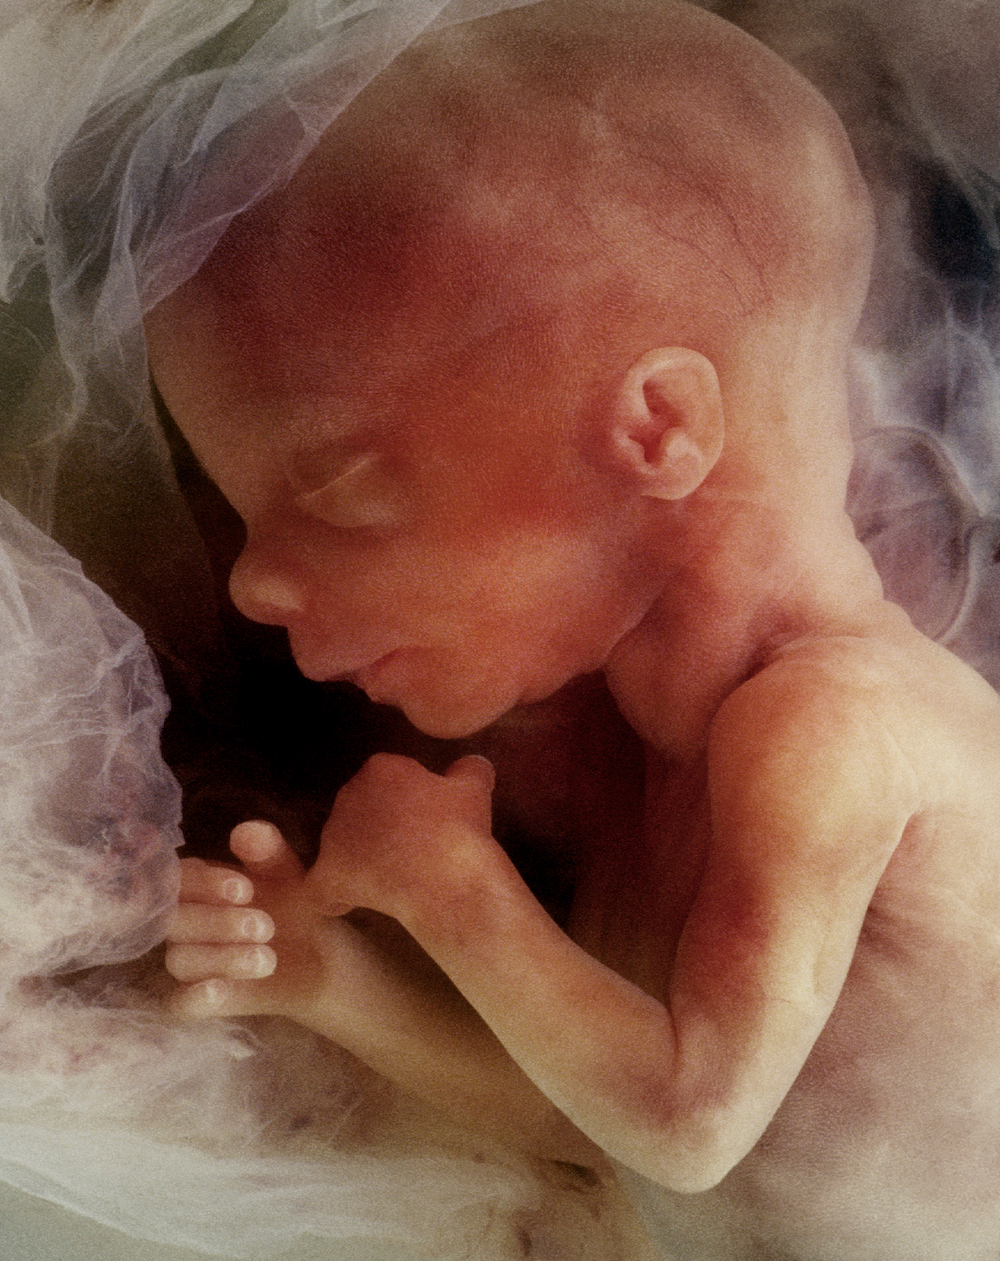 子宮內嬰兒的圖片。（Steve Allen/Shutterstock）